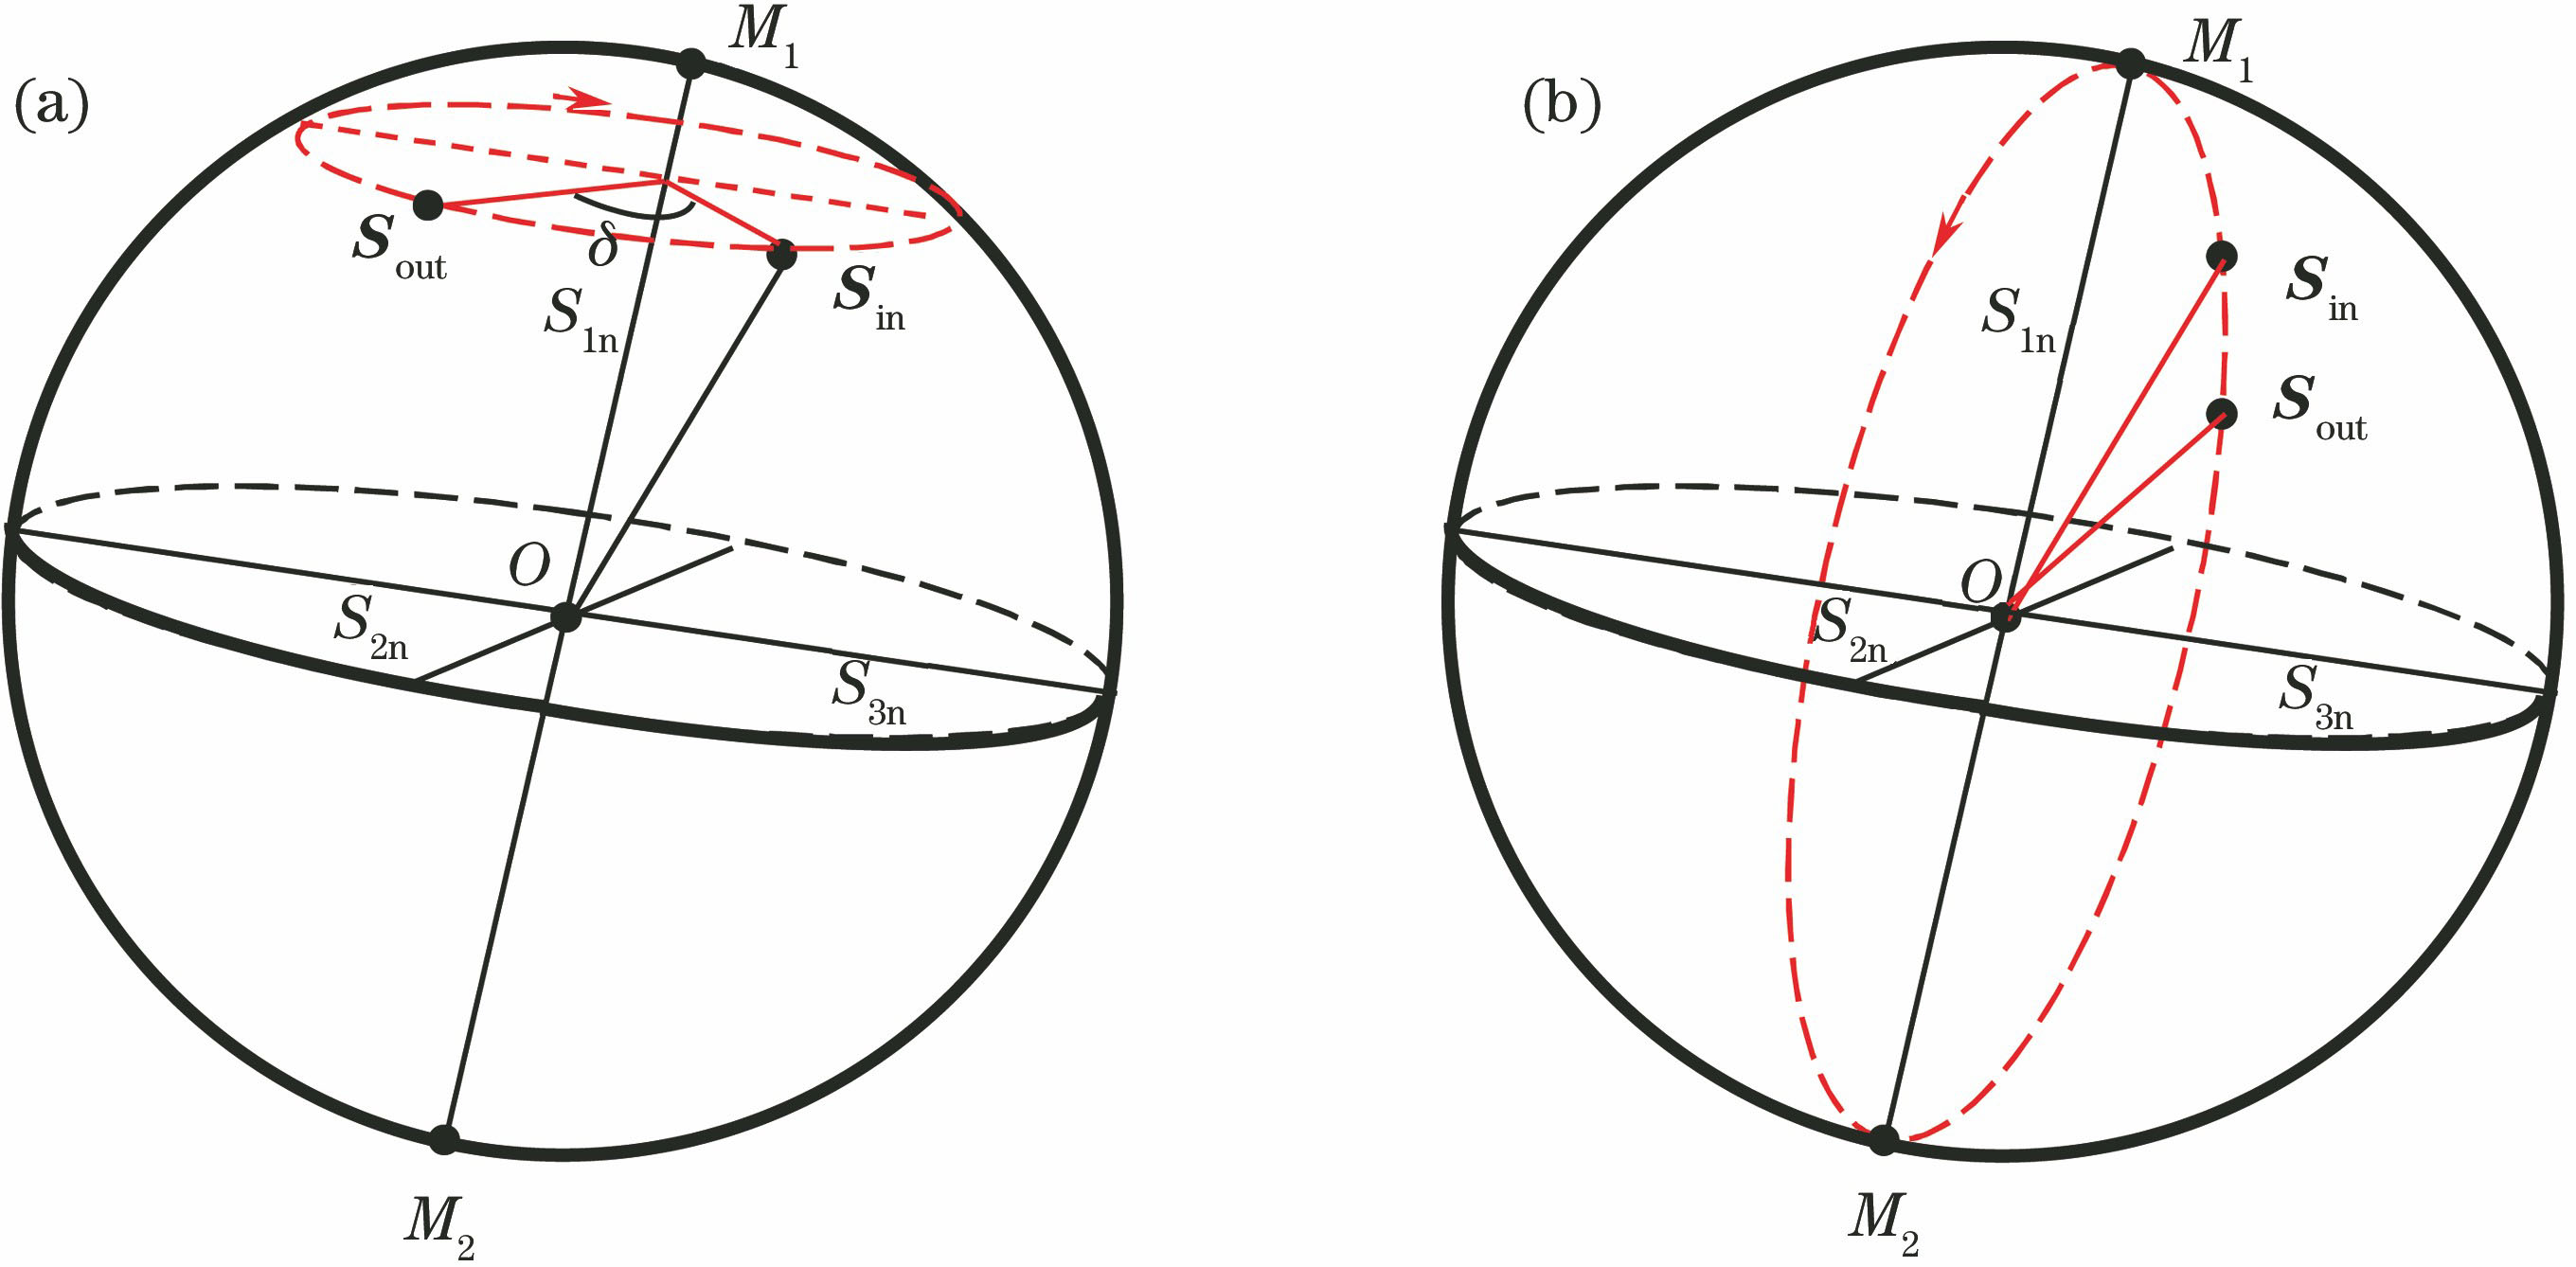 Trajectories on Poincare sphere. (a) Birefringent unit; (b) dichromatic unit